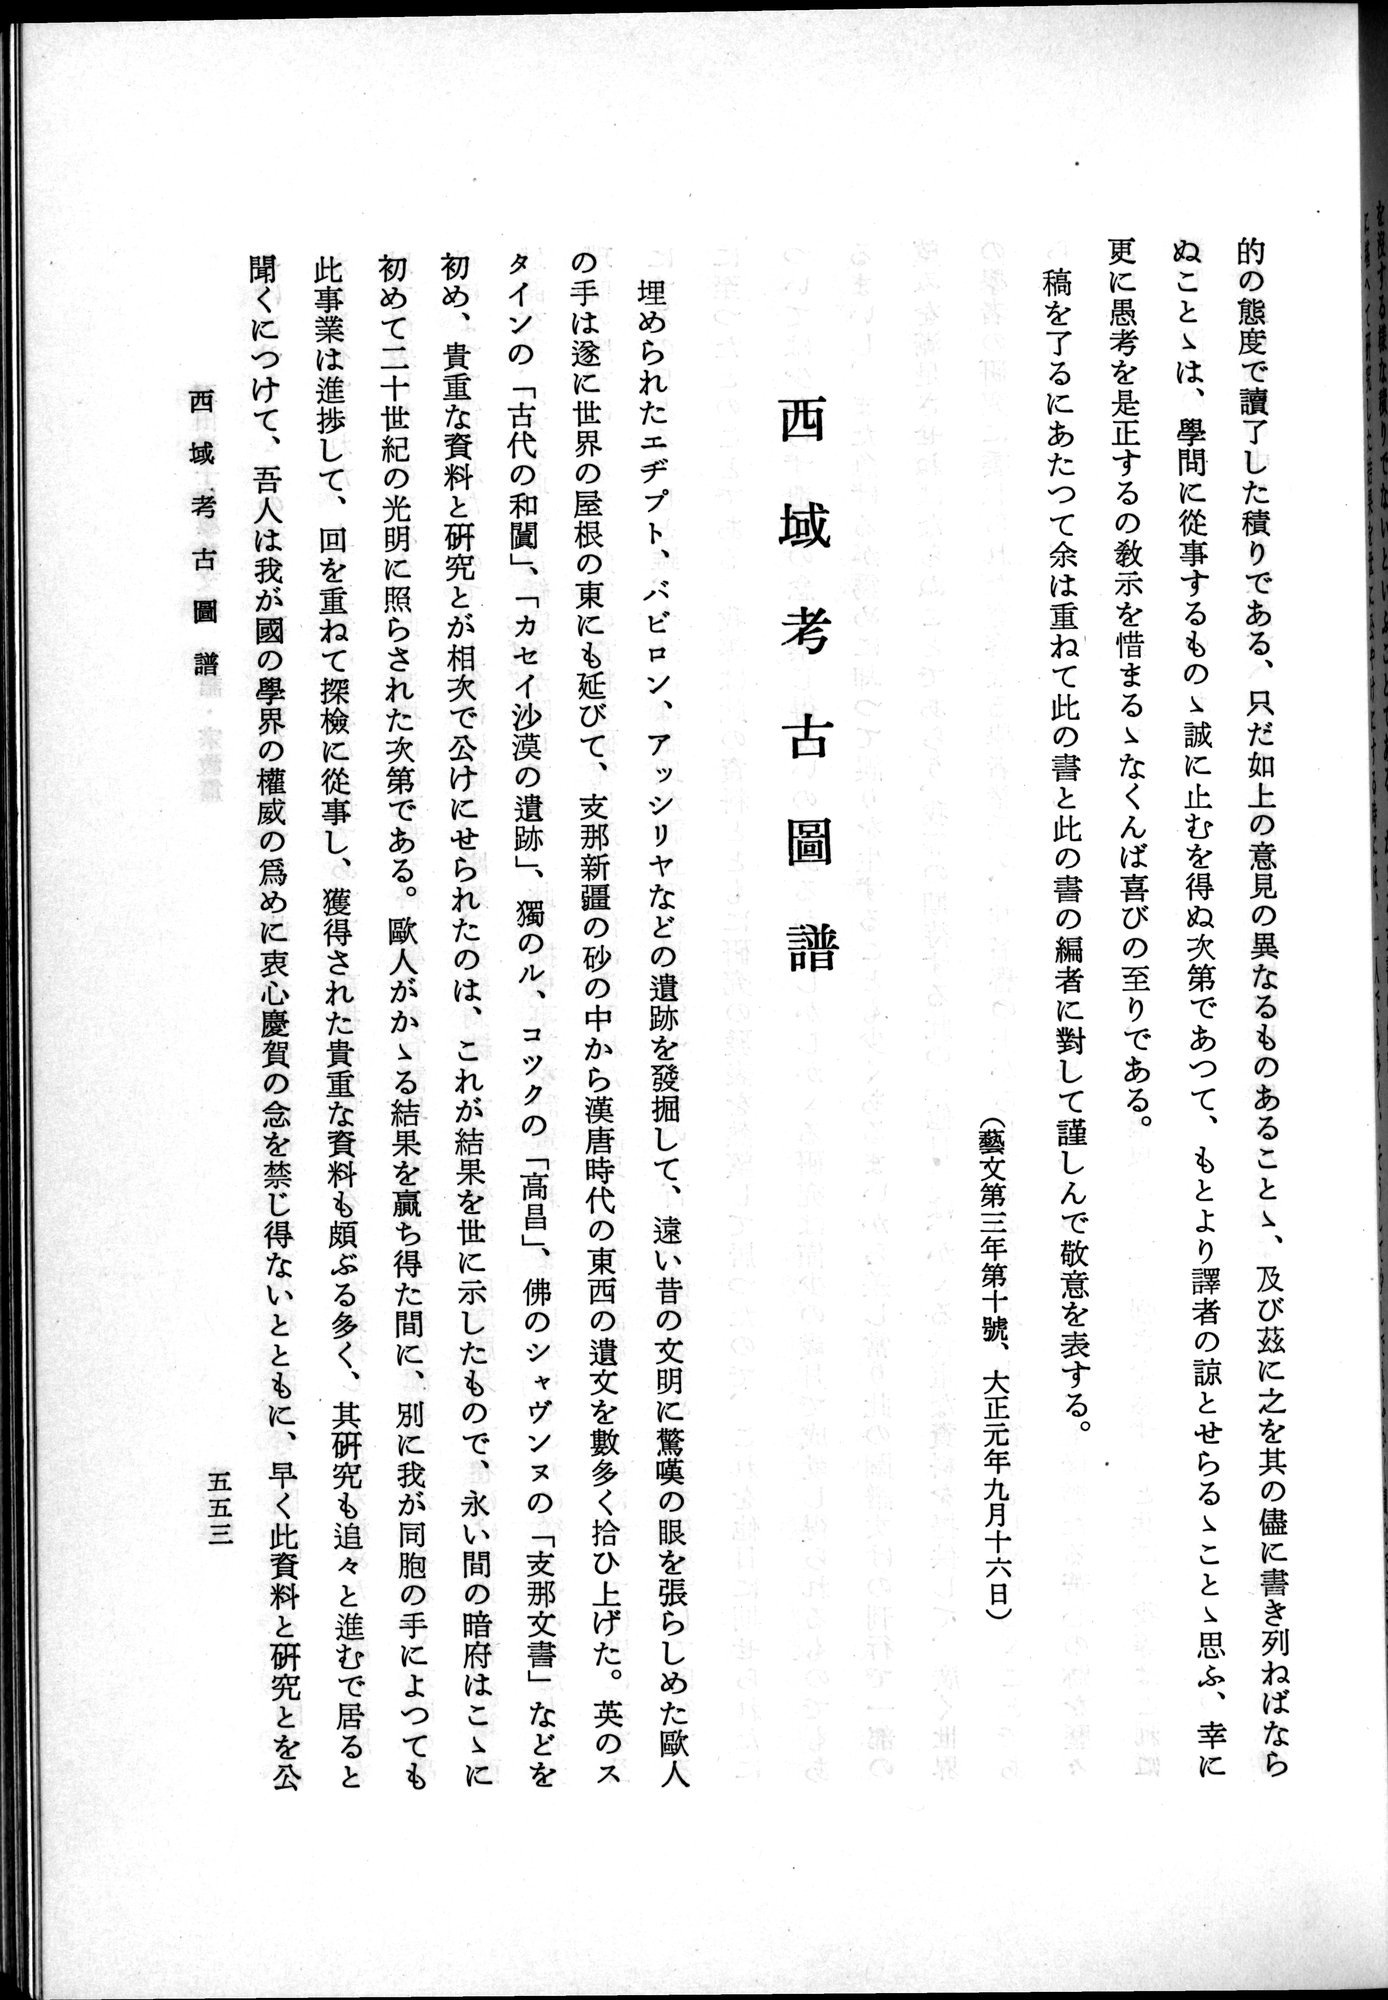 羽田博士史学論文集 : vol.2 / Page 615 (Grayscale High Resolution Image)